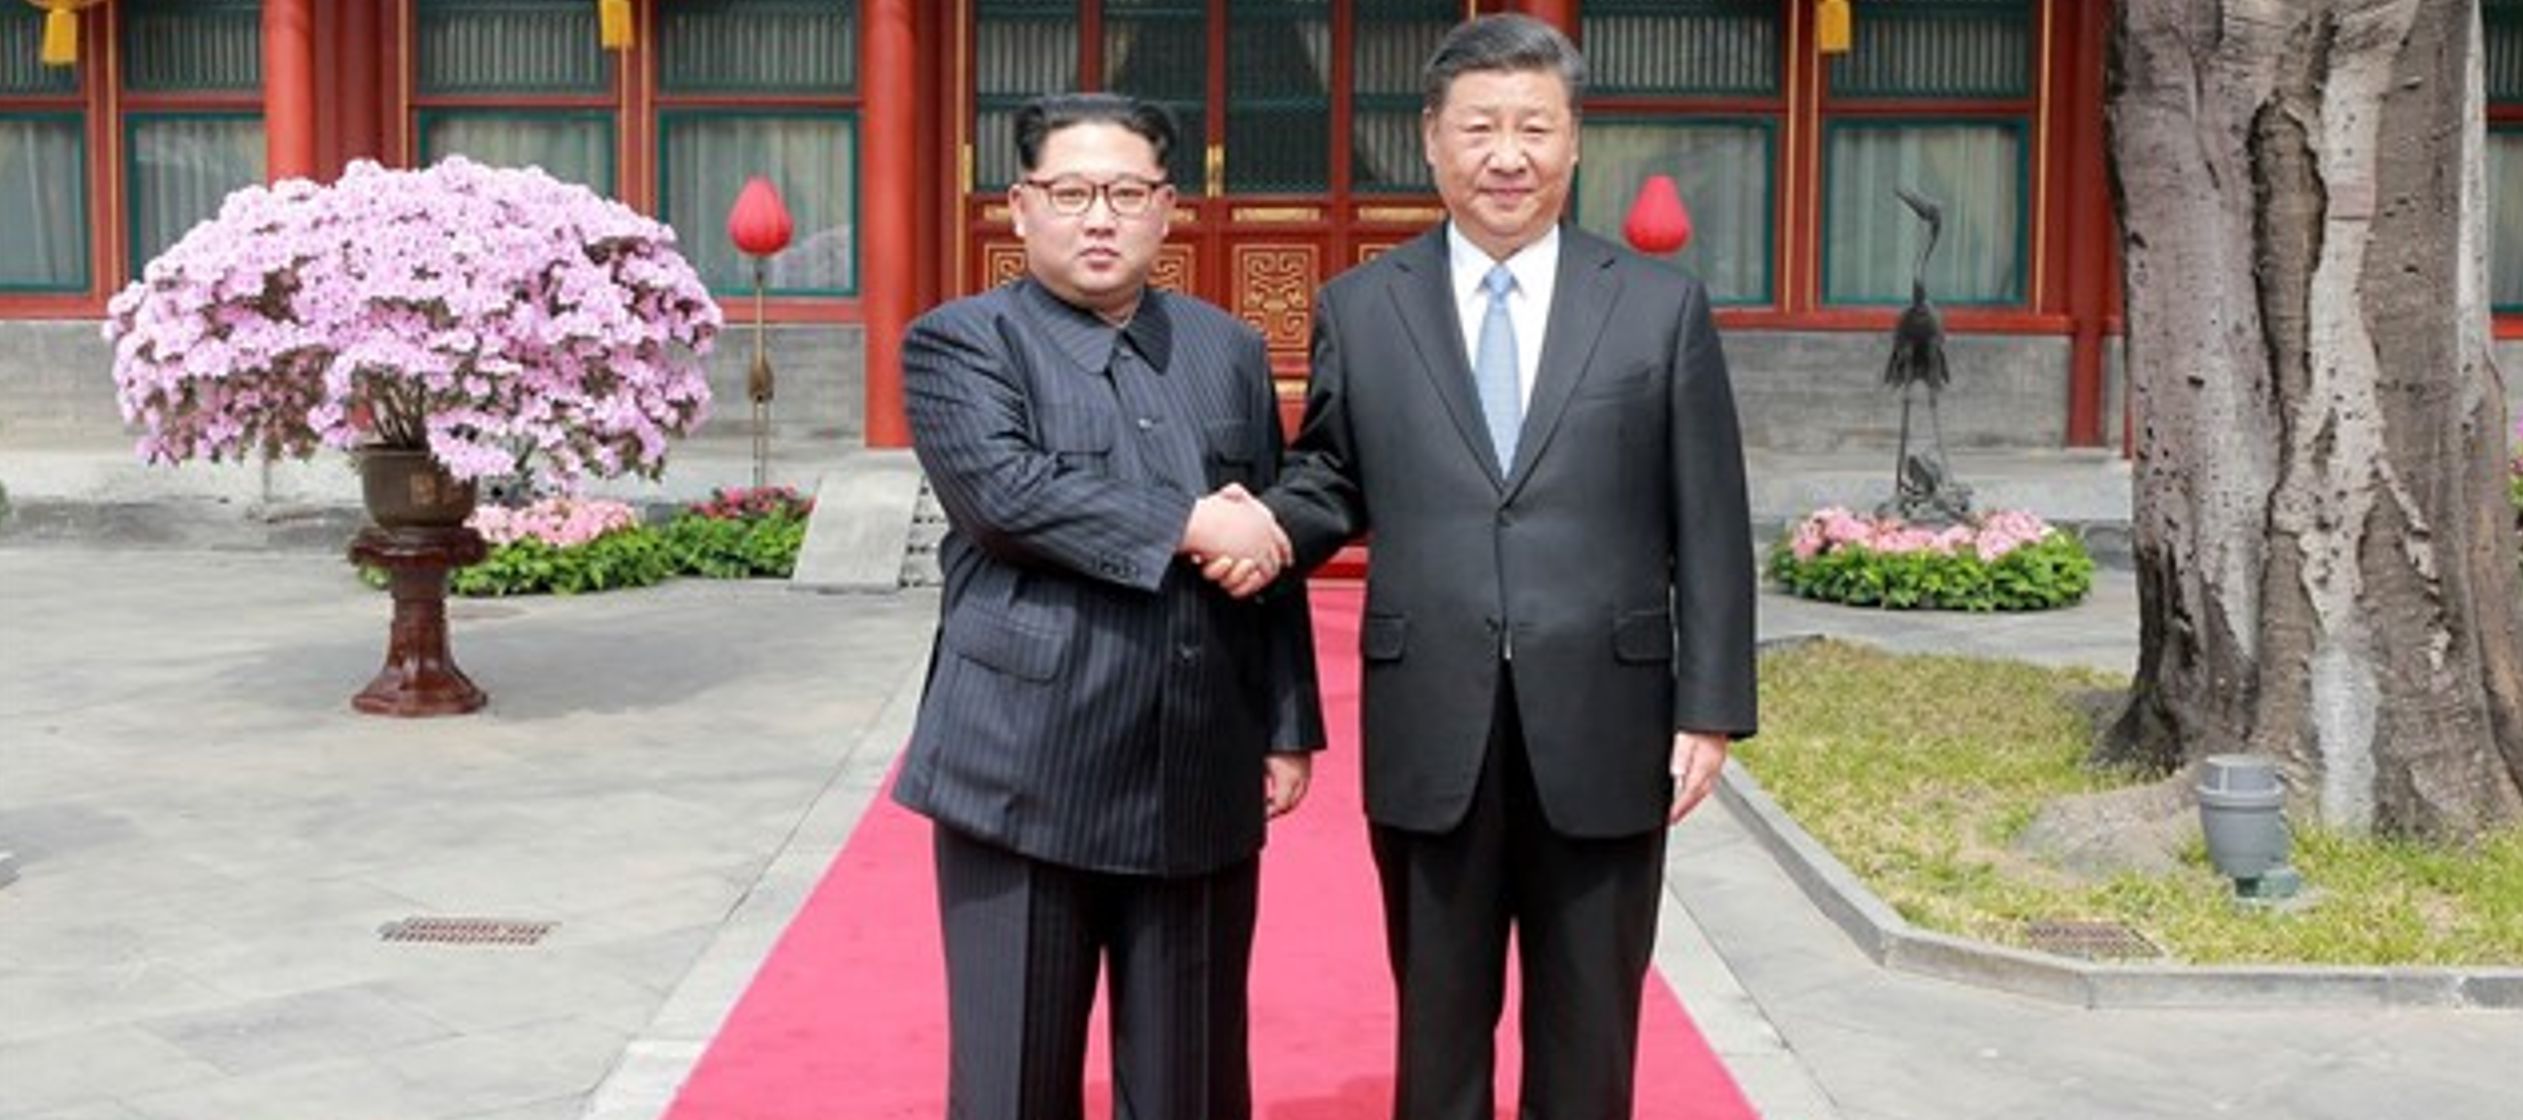 El diario surcoreano 'Hankyoreh' ha señalado en su página web que Kim...